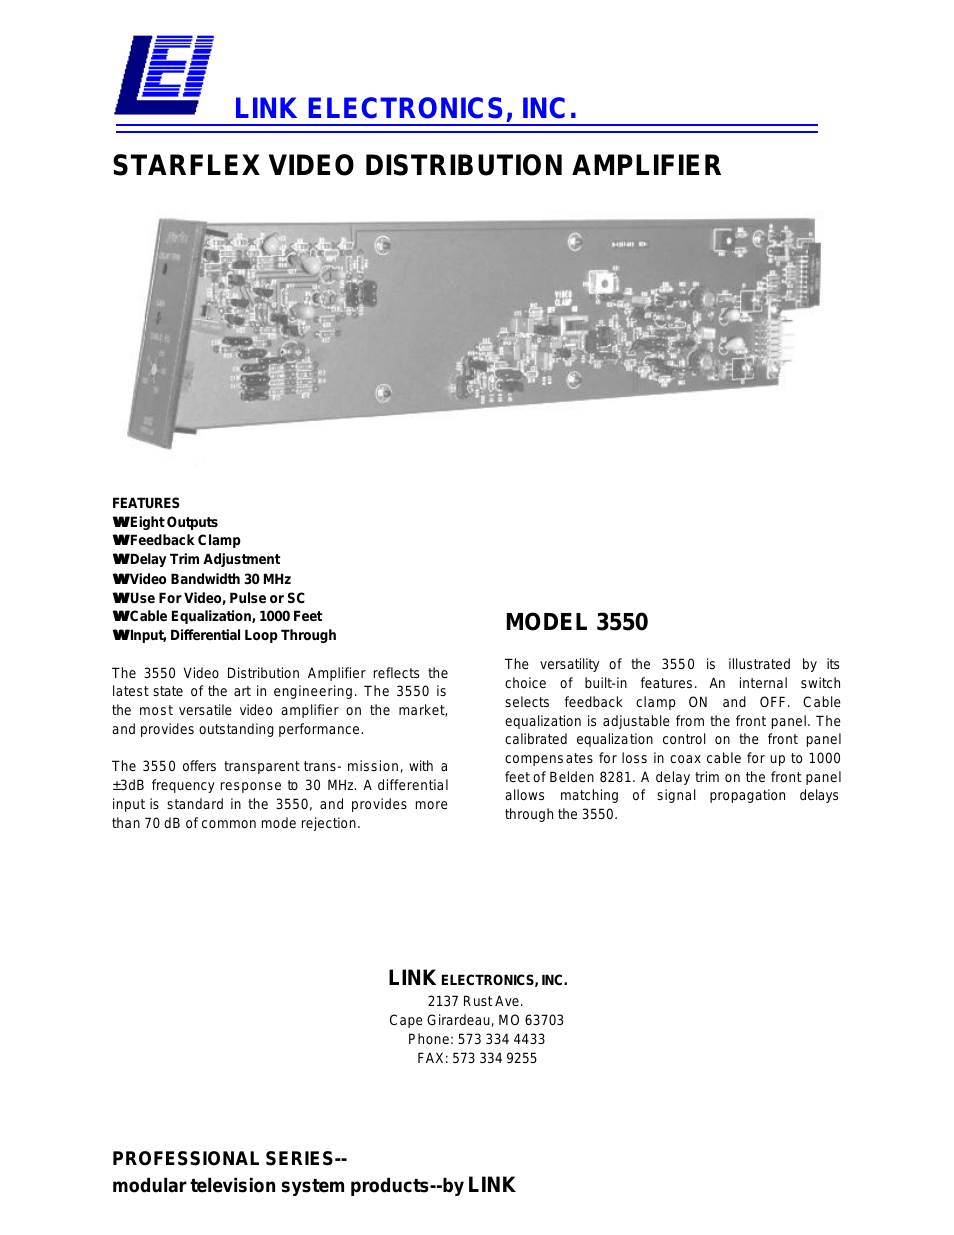 Starflex 3550